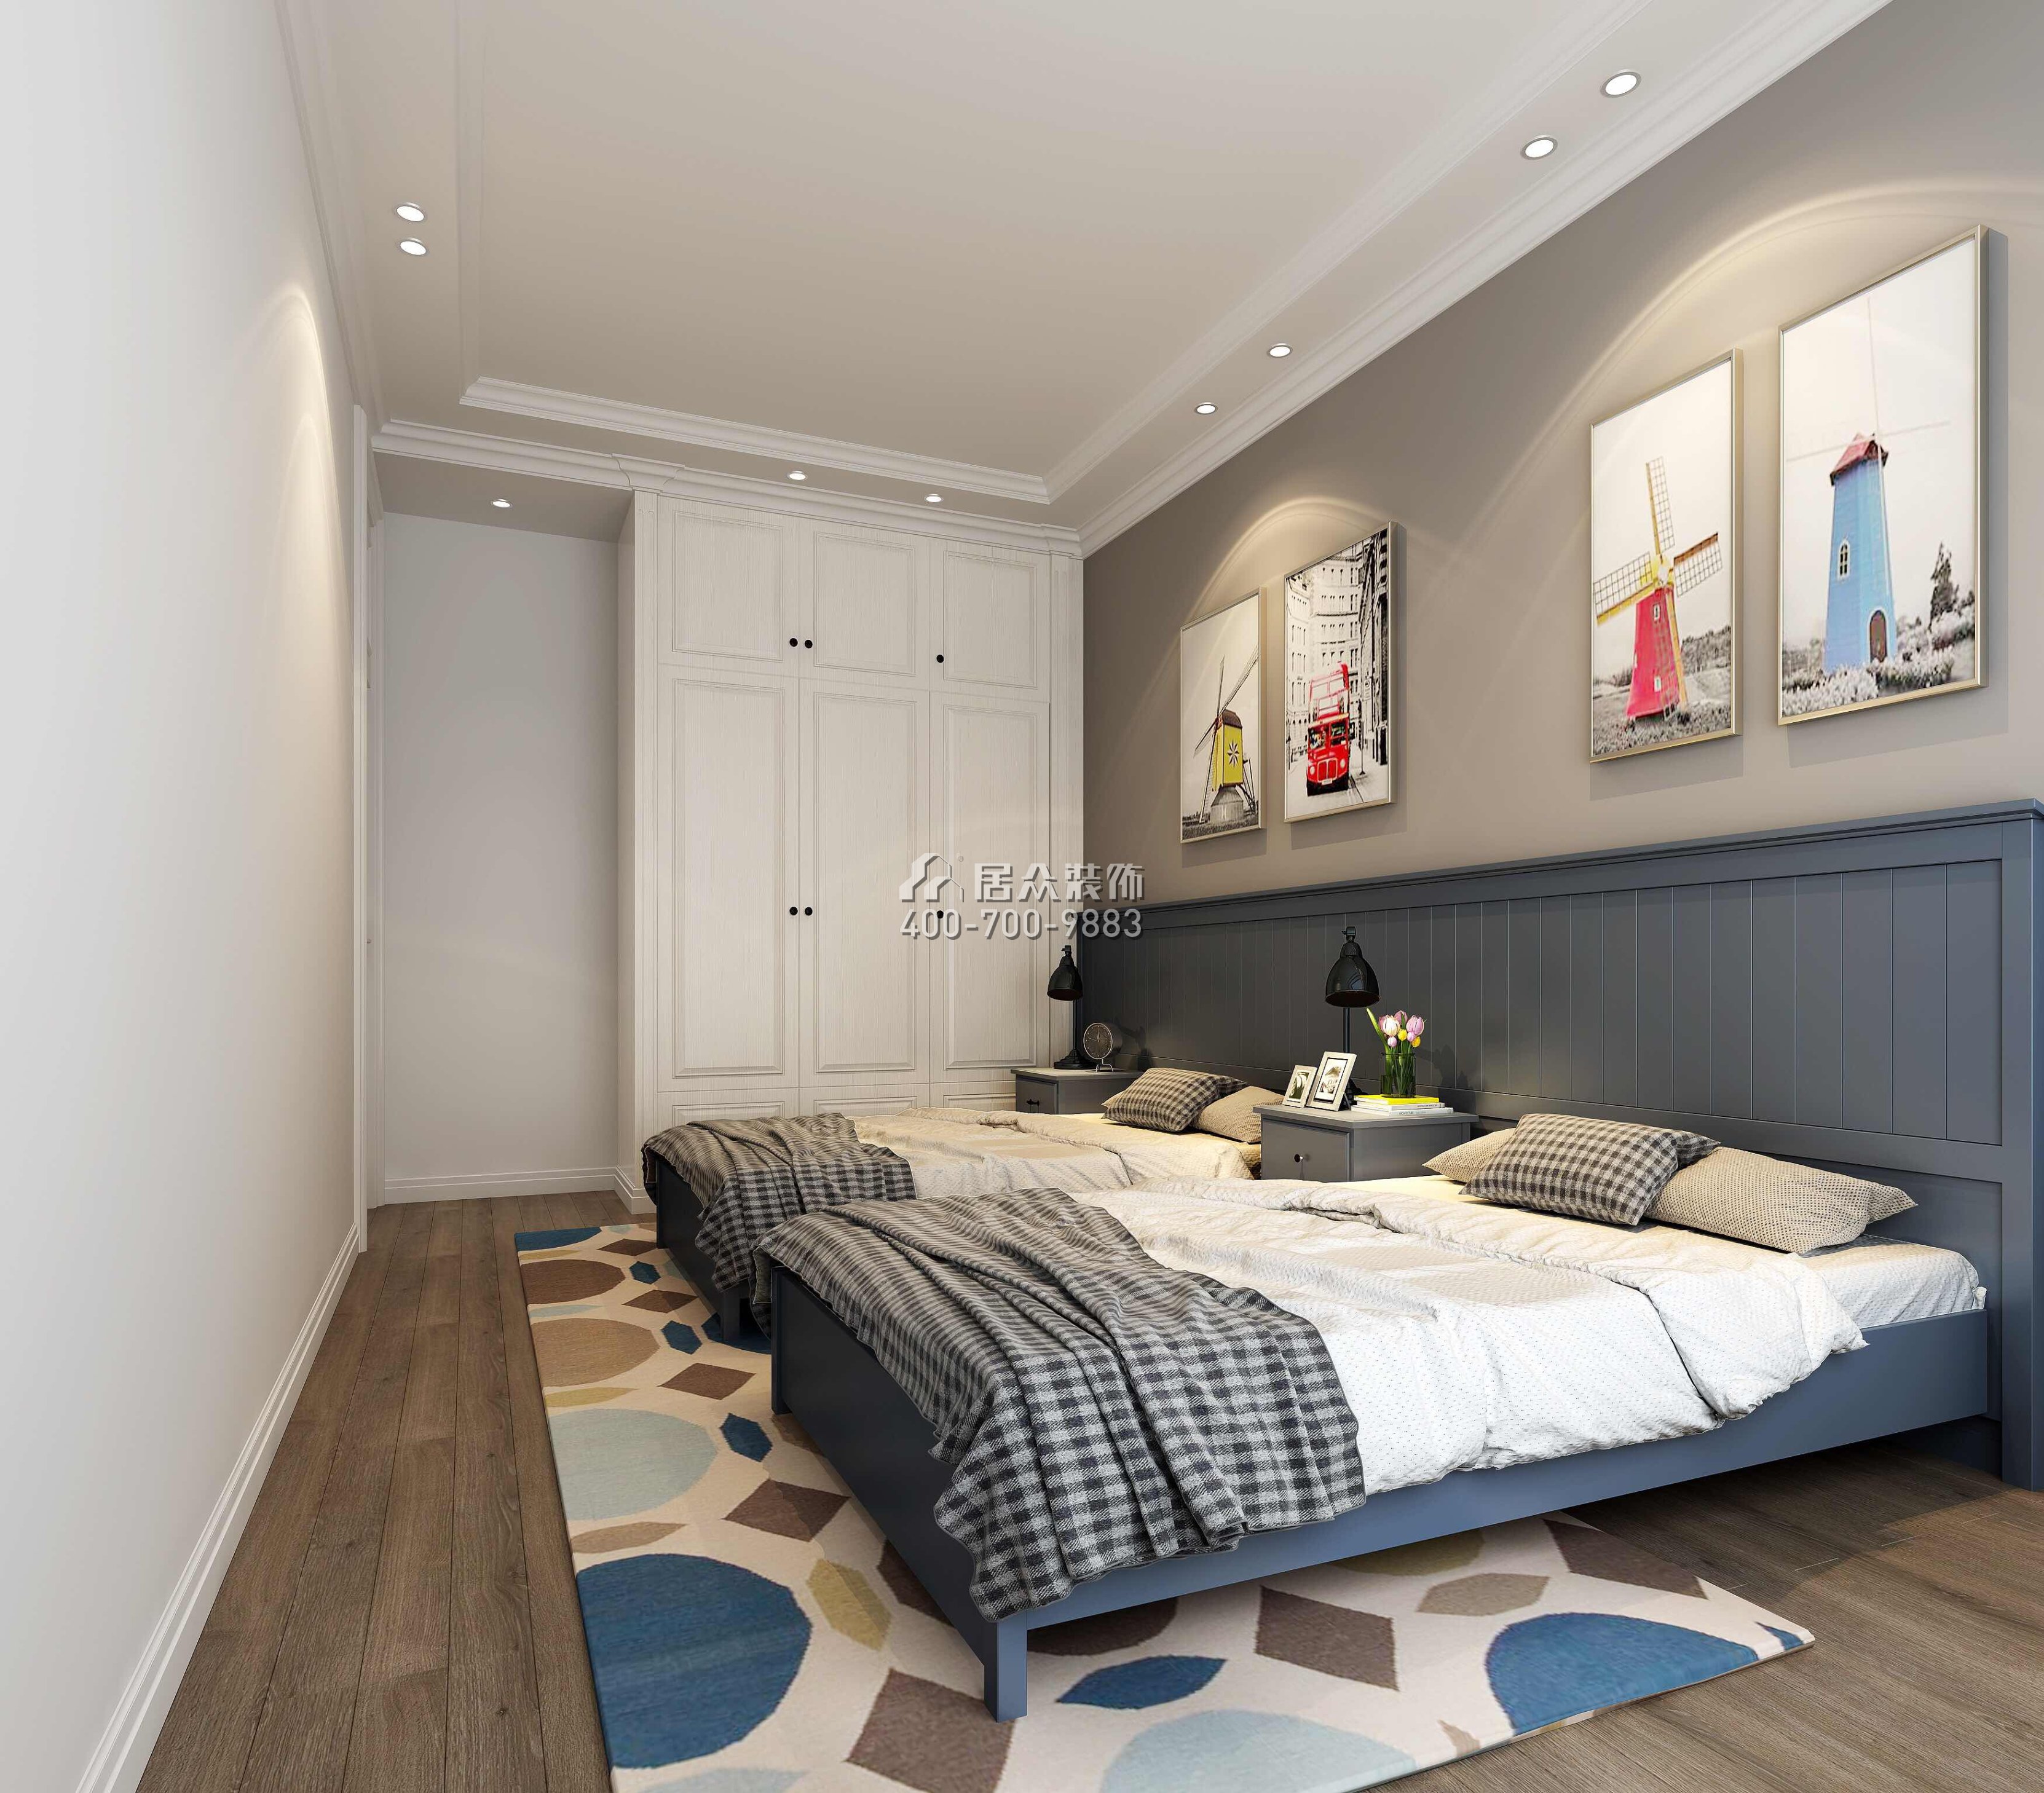 星河传说聚星岛110平方米美式风格平层户型卧室装修效果图